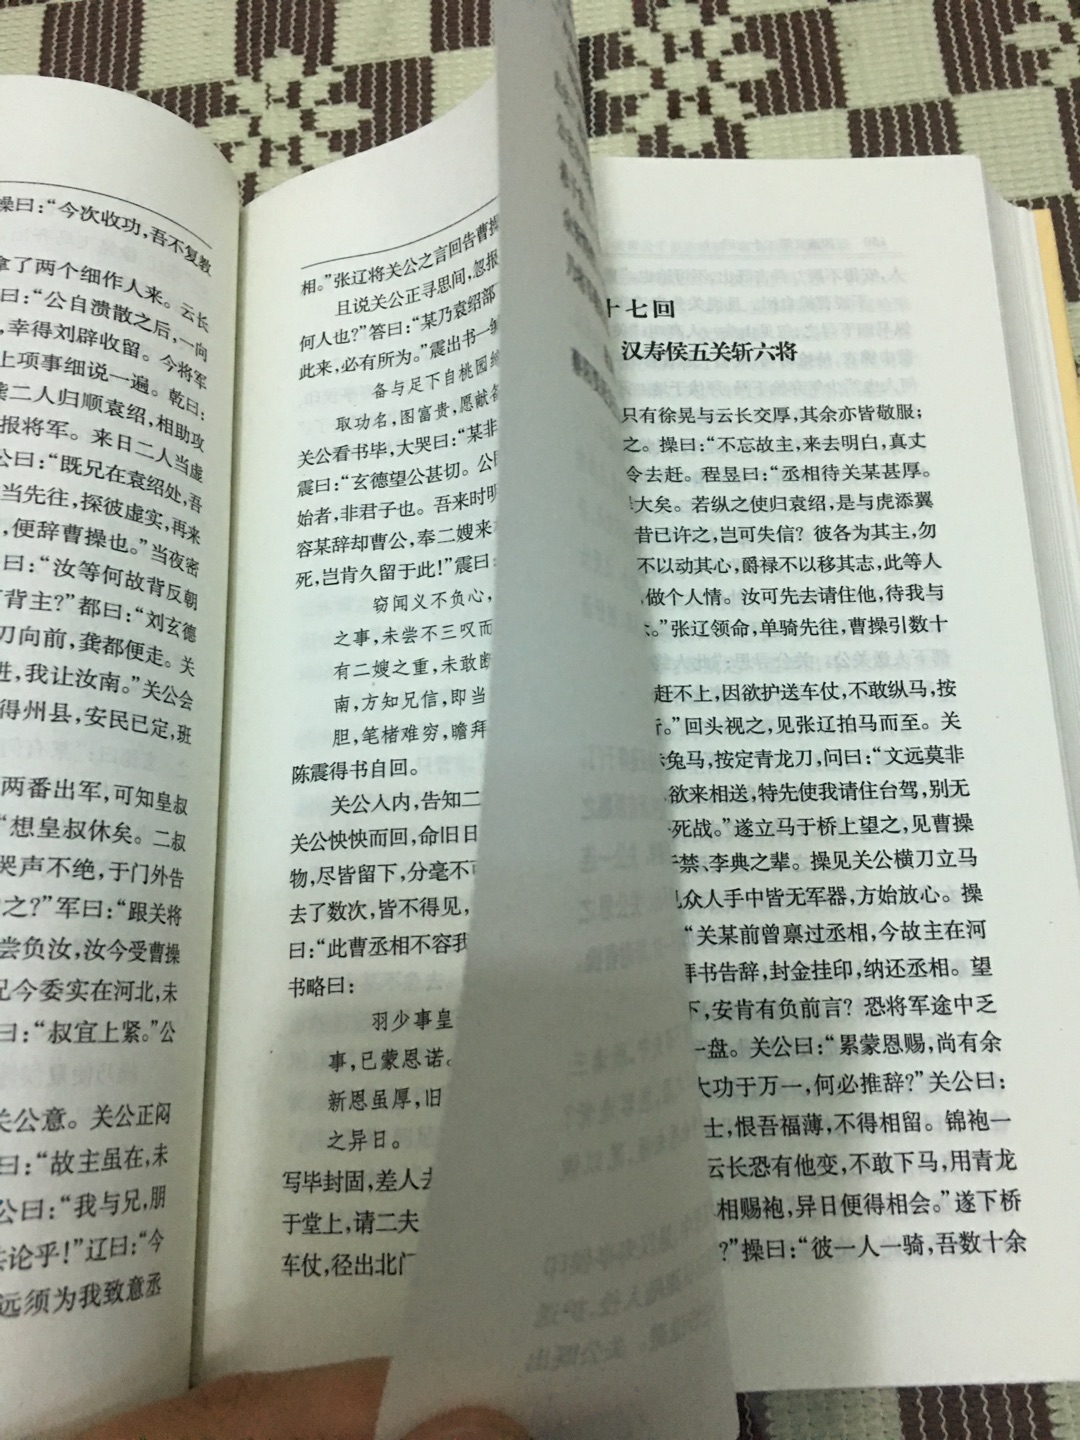 排版不错，字体大小都很合适，不过纸张有点薄，有点透字！中华书局的书还是有保证的！